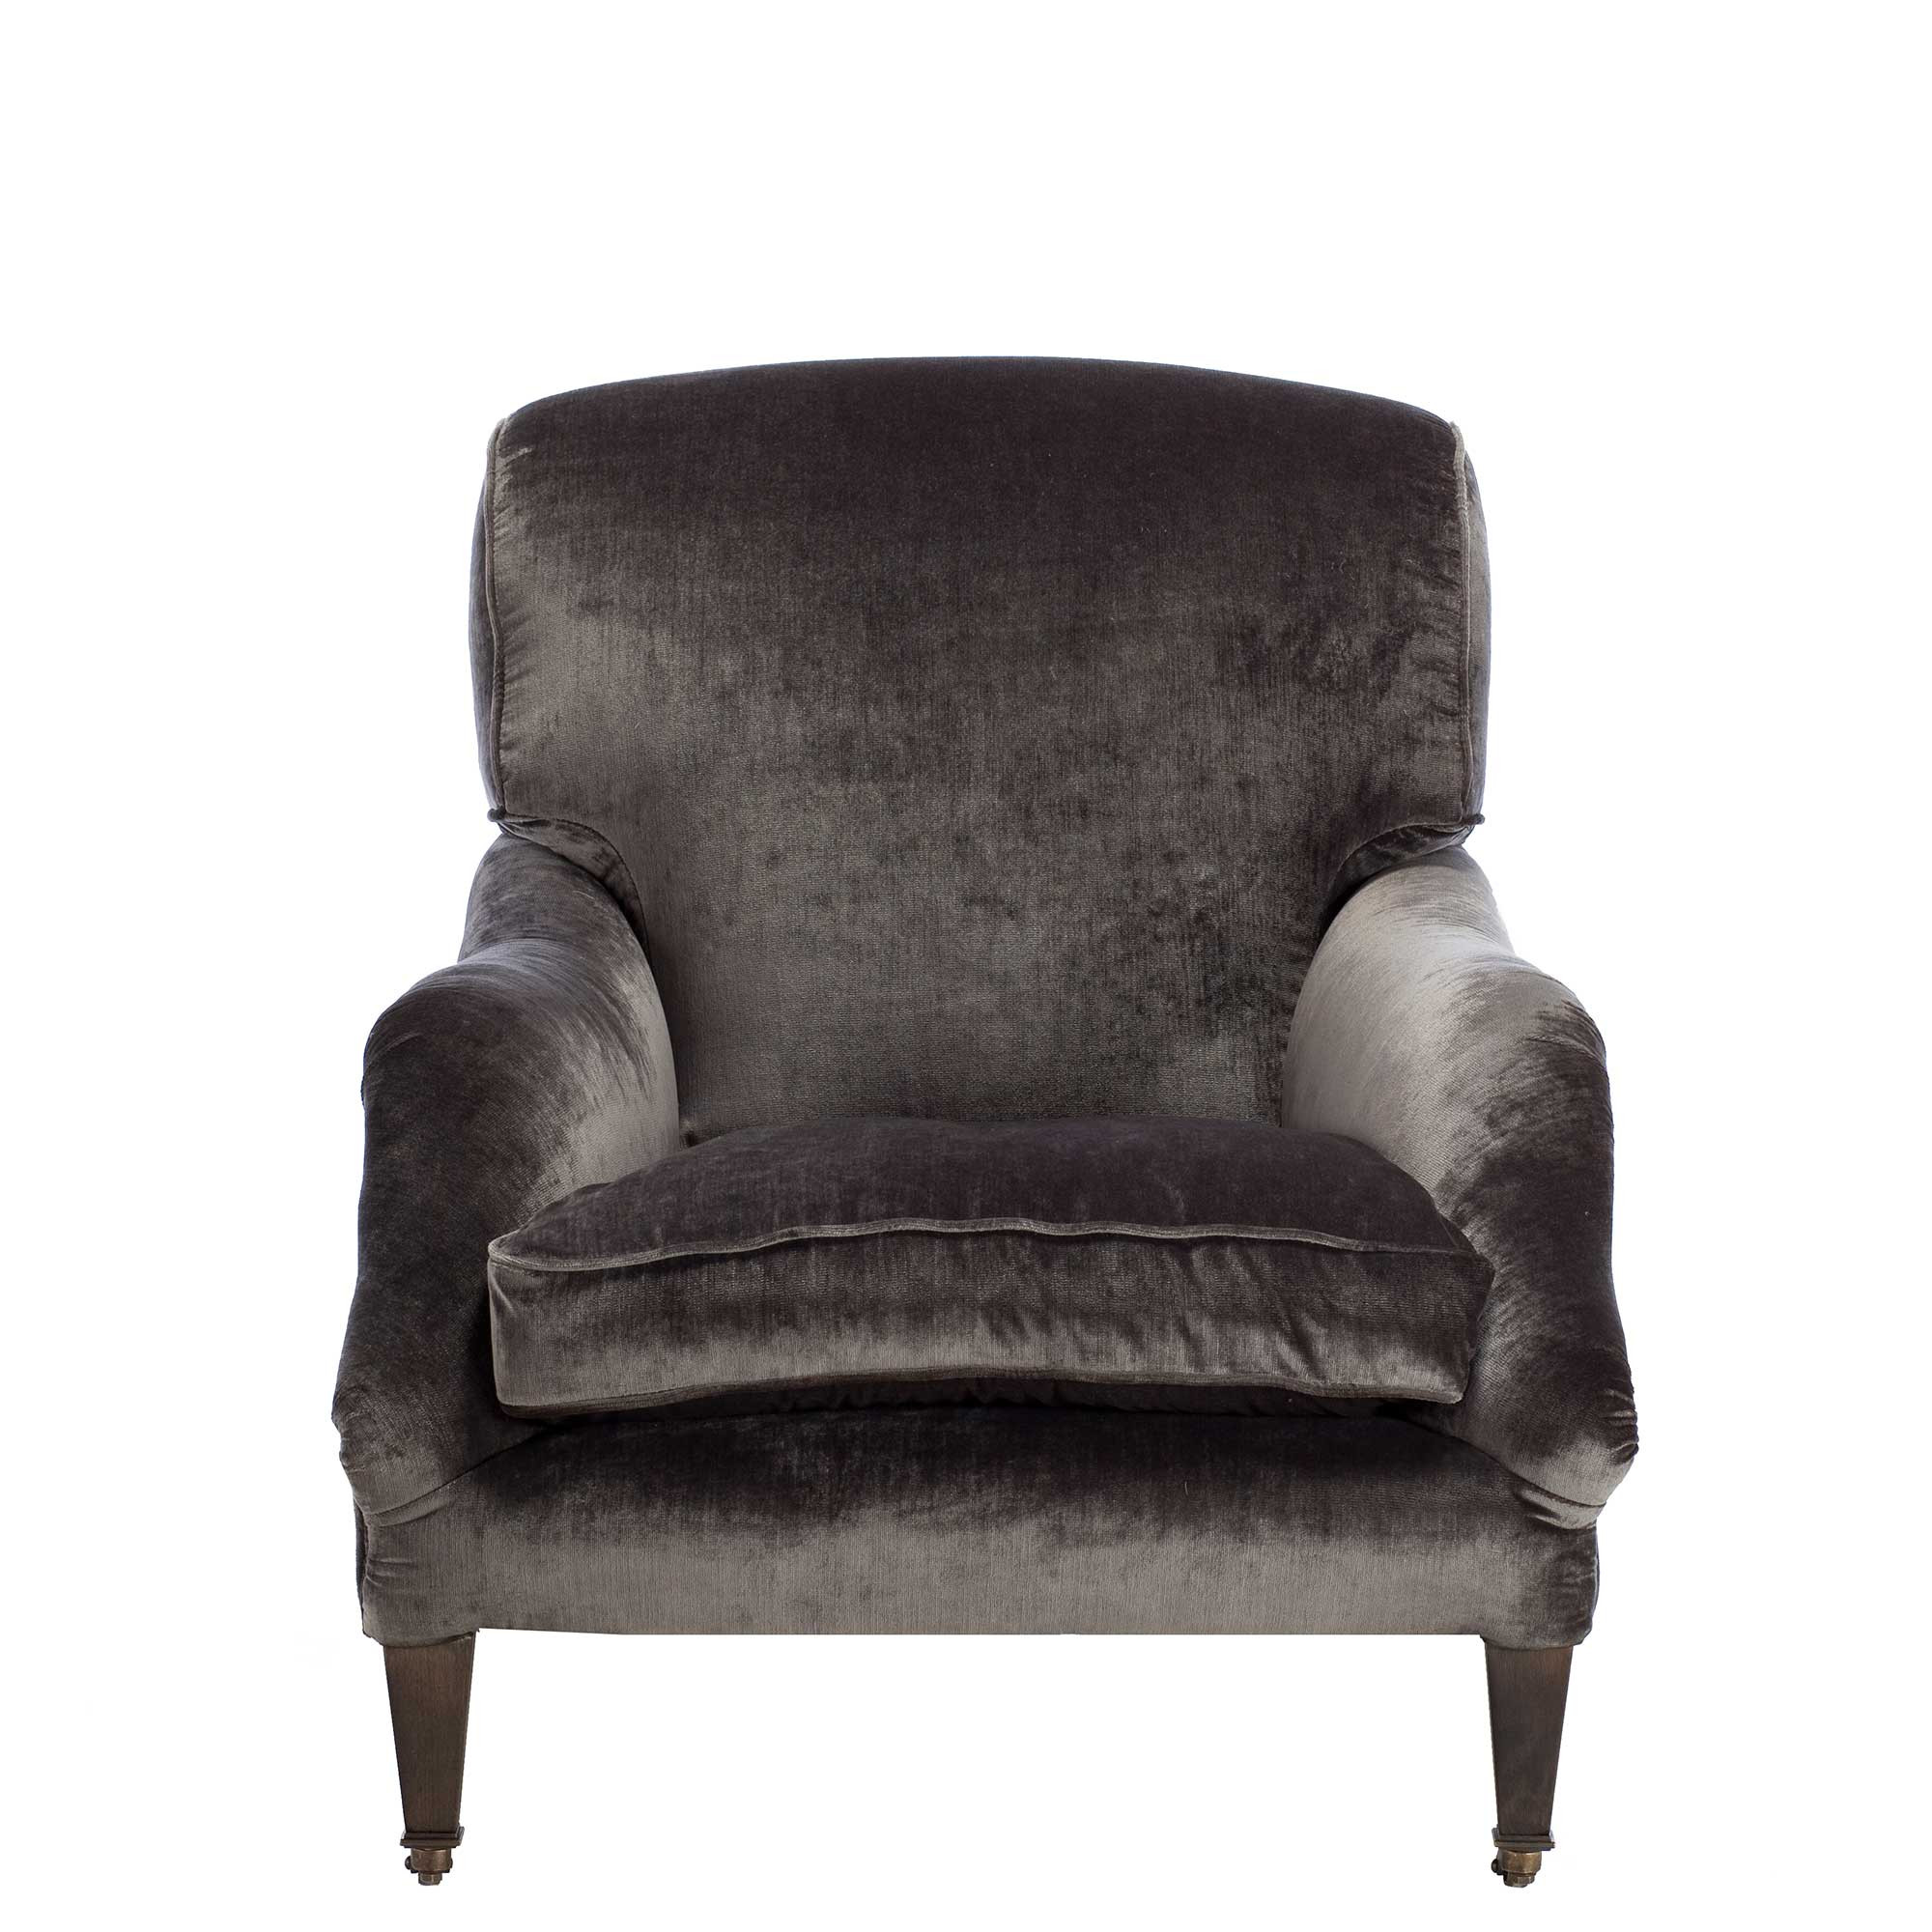 Velvet Living Room Chairs
 Linthwaite Velvet Club Chair Grey Chairs